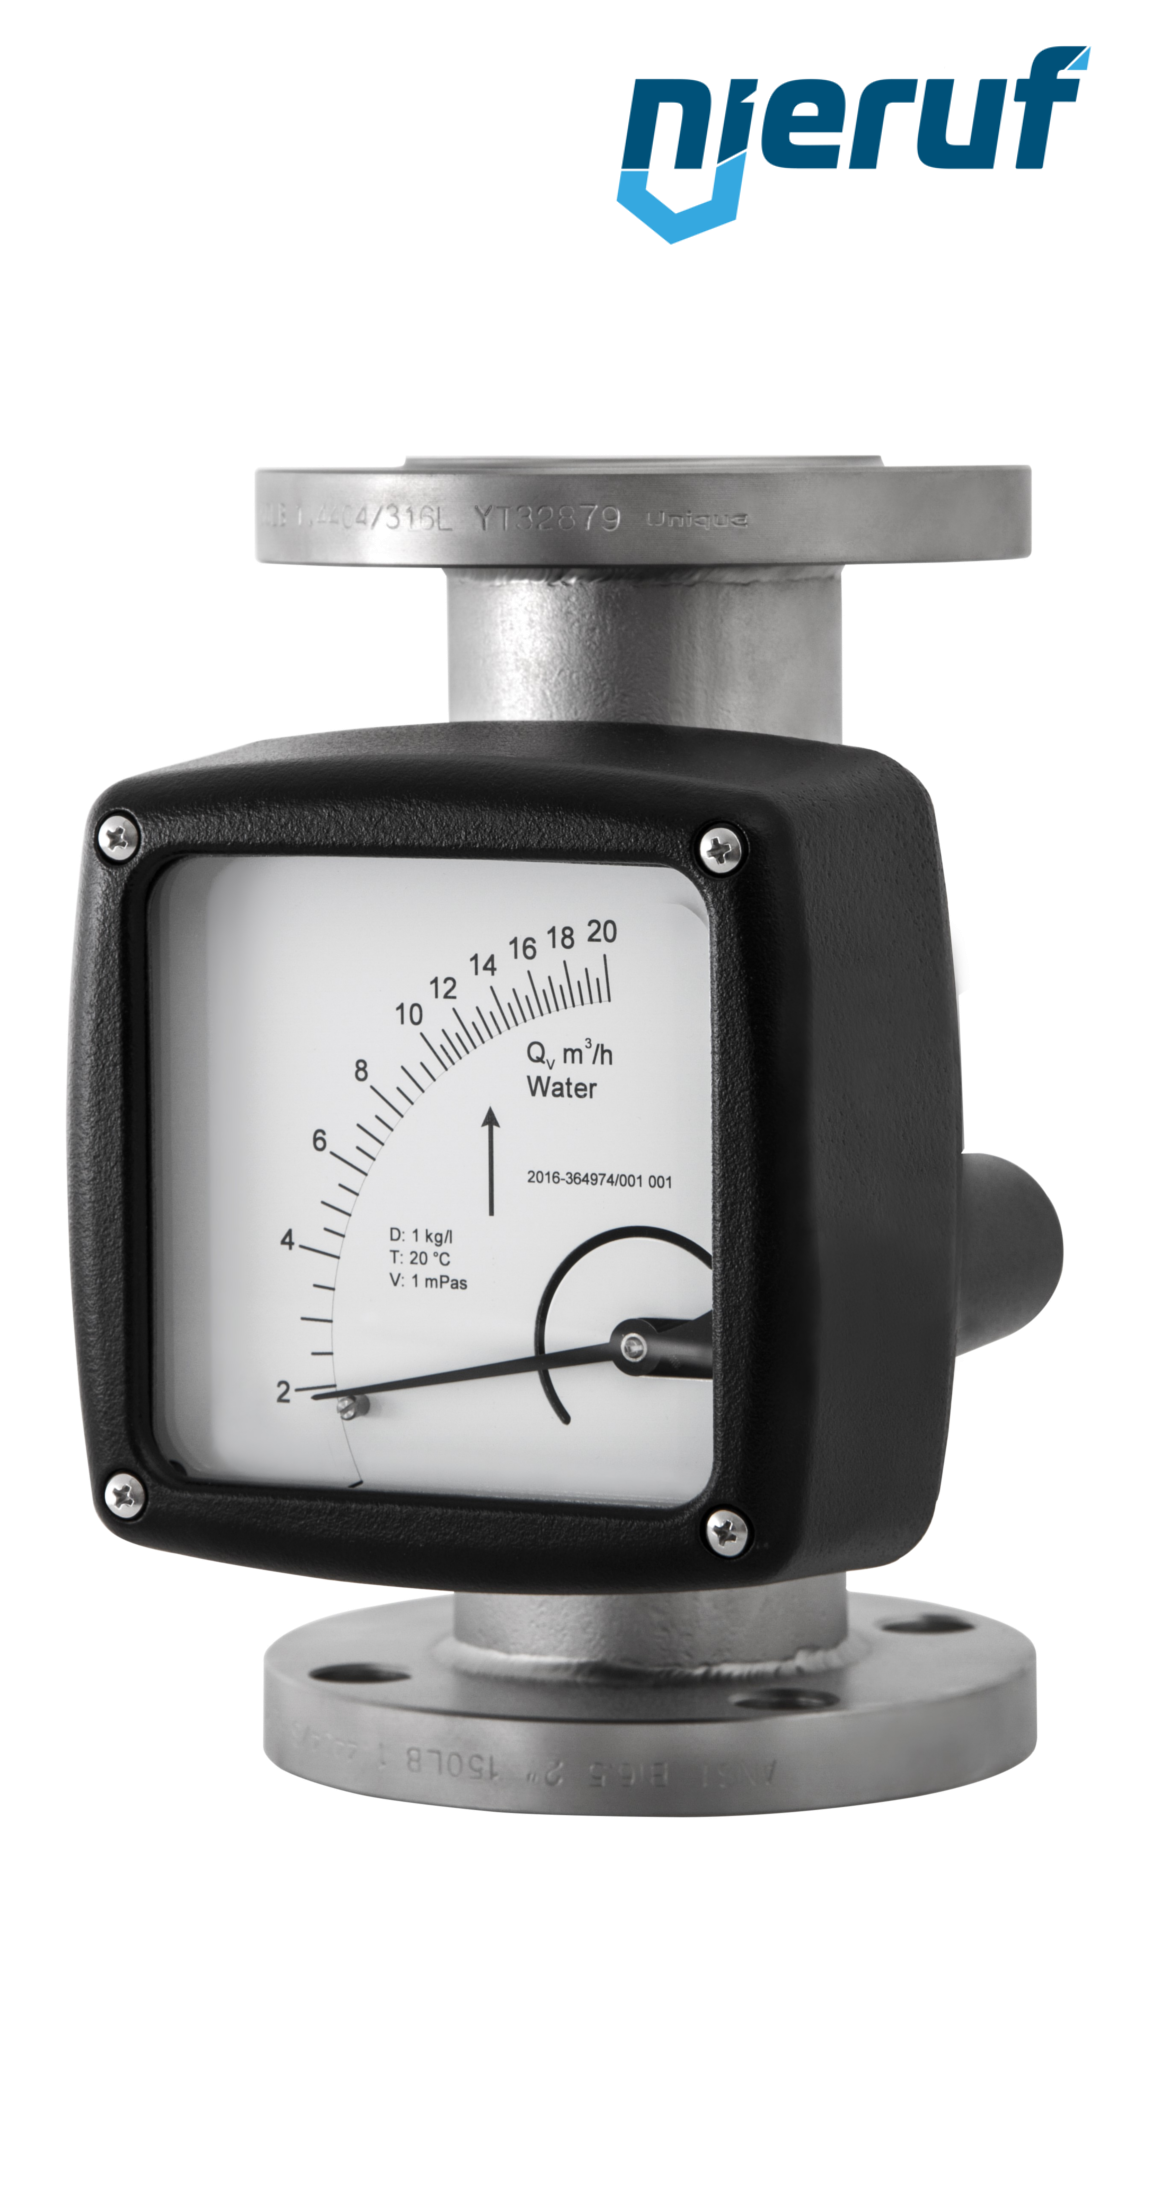 misuratore di flusso / rotametro completamente in metallo DN100-attacco 70,0 - 700,0 m3/h tubo DN50 aria